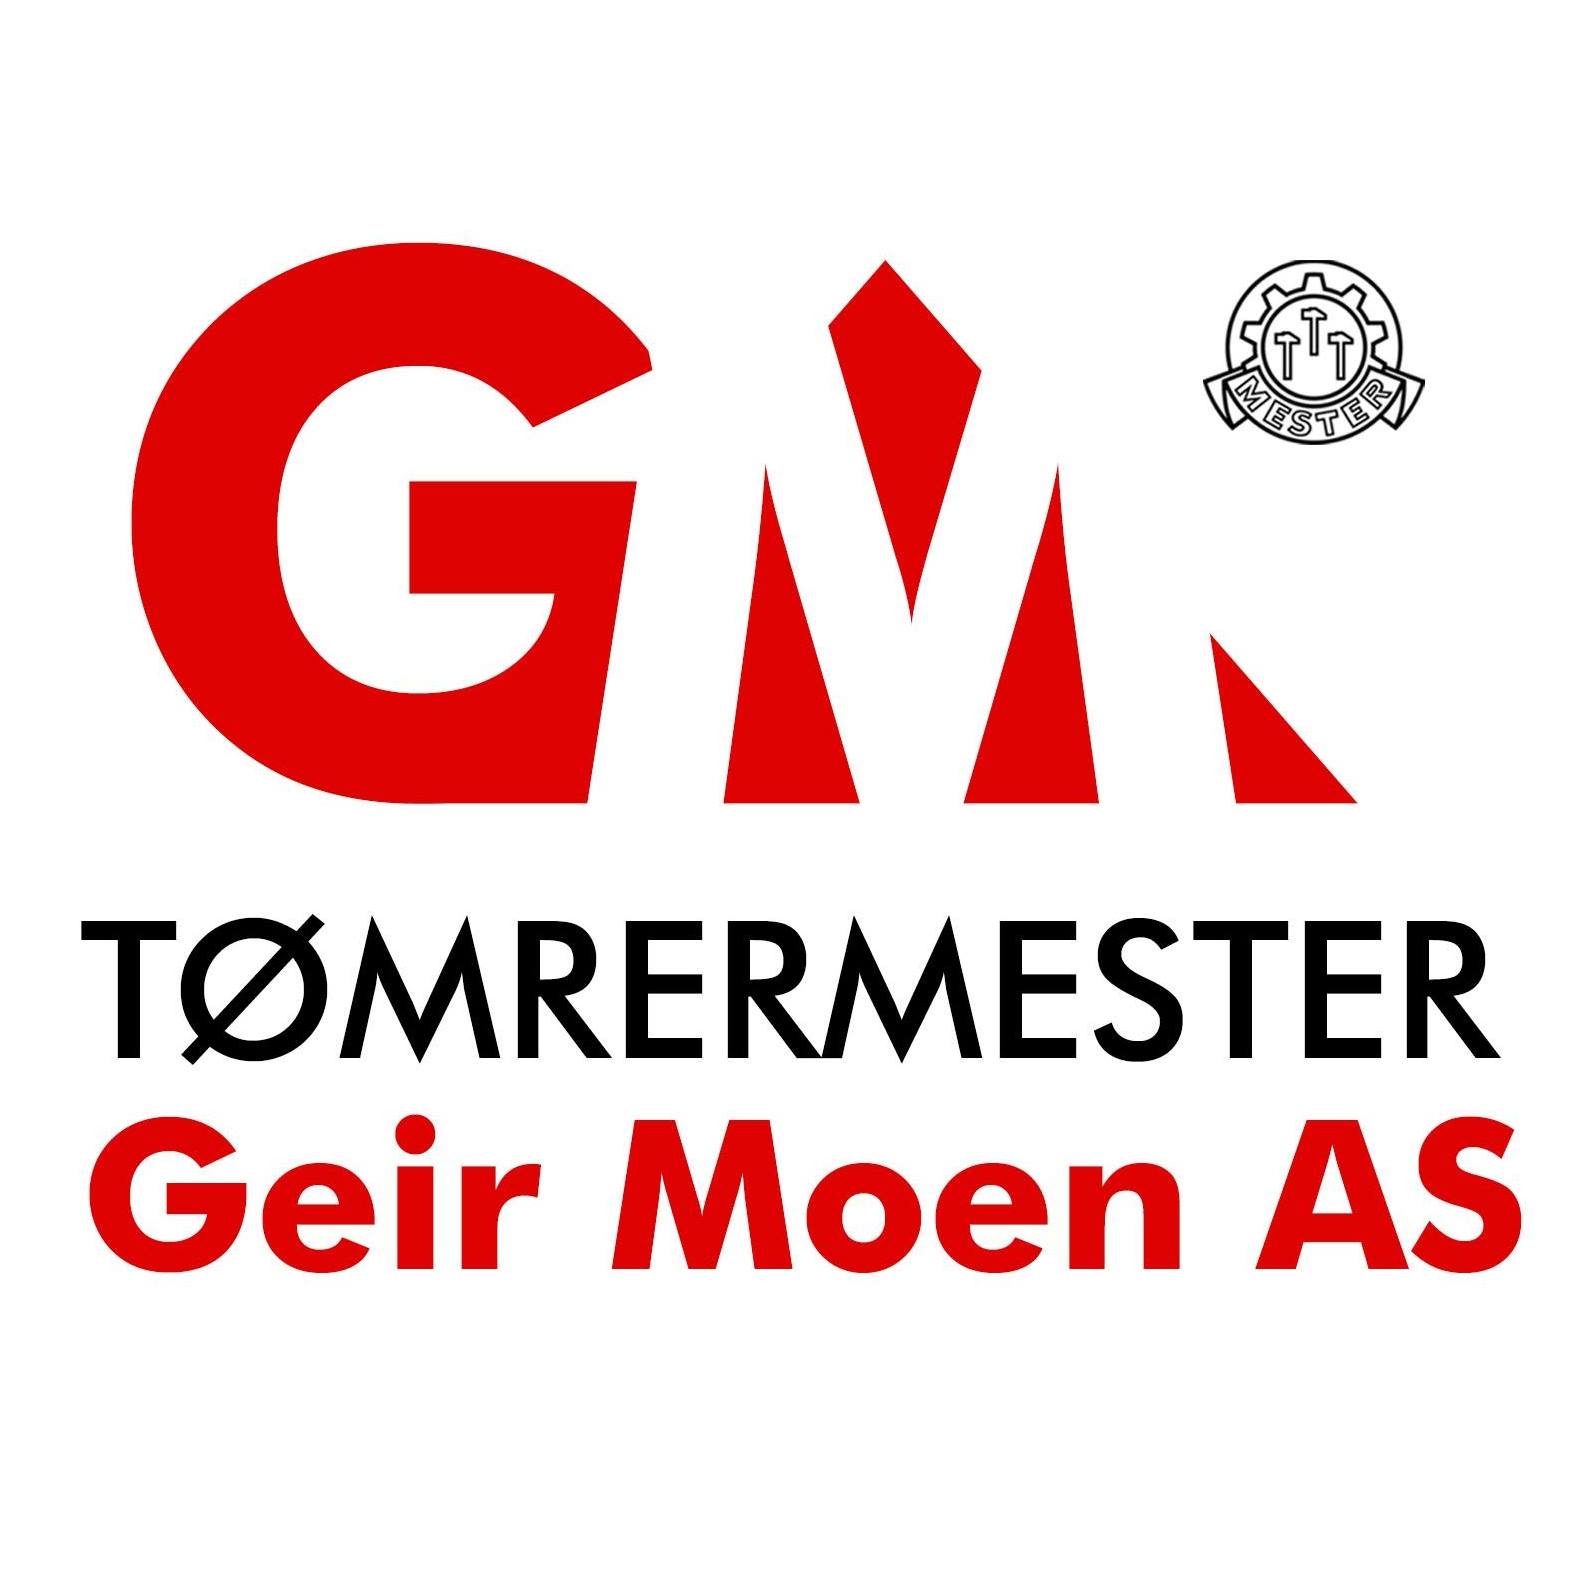 Tømremester Geir Moen AS